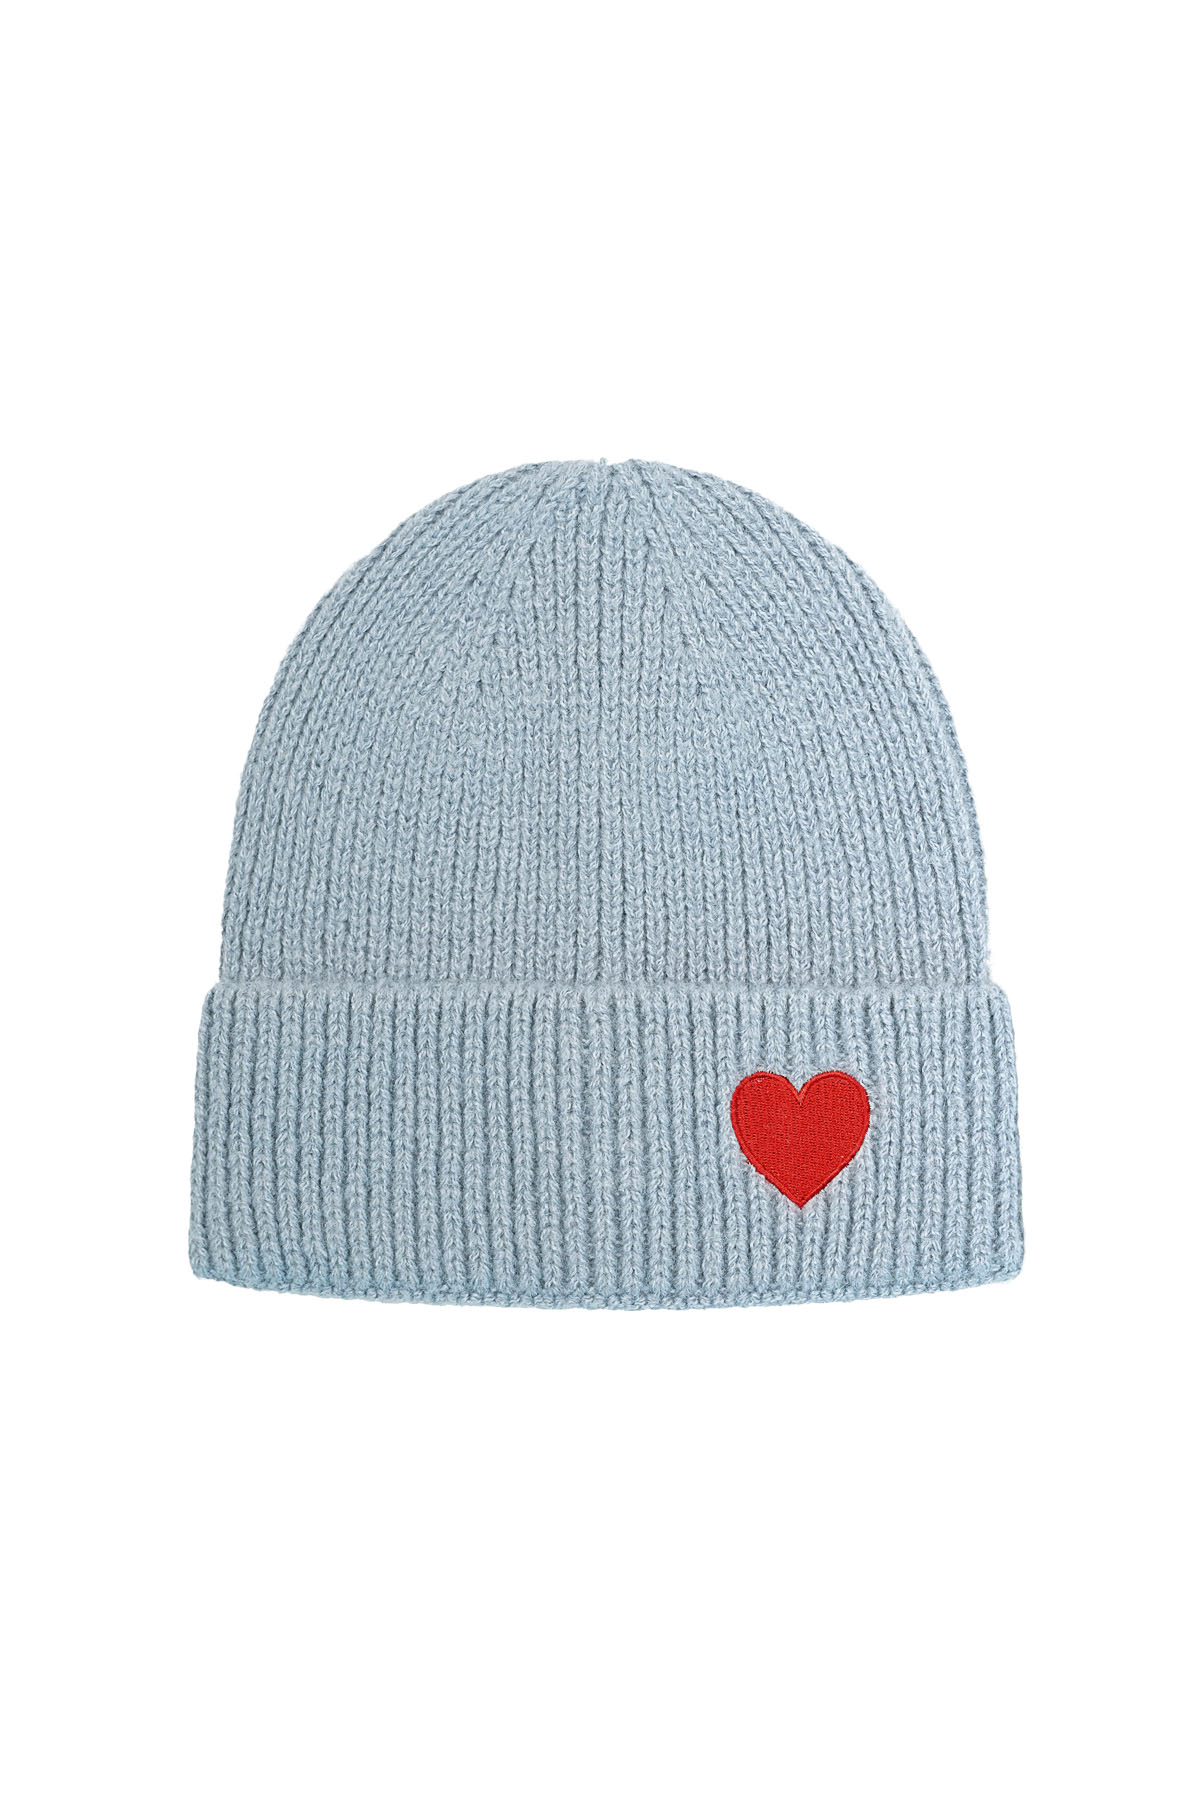 Hut mit Herzdetail – blau